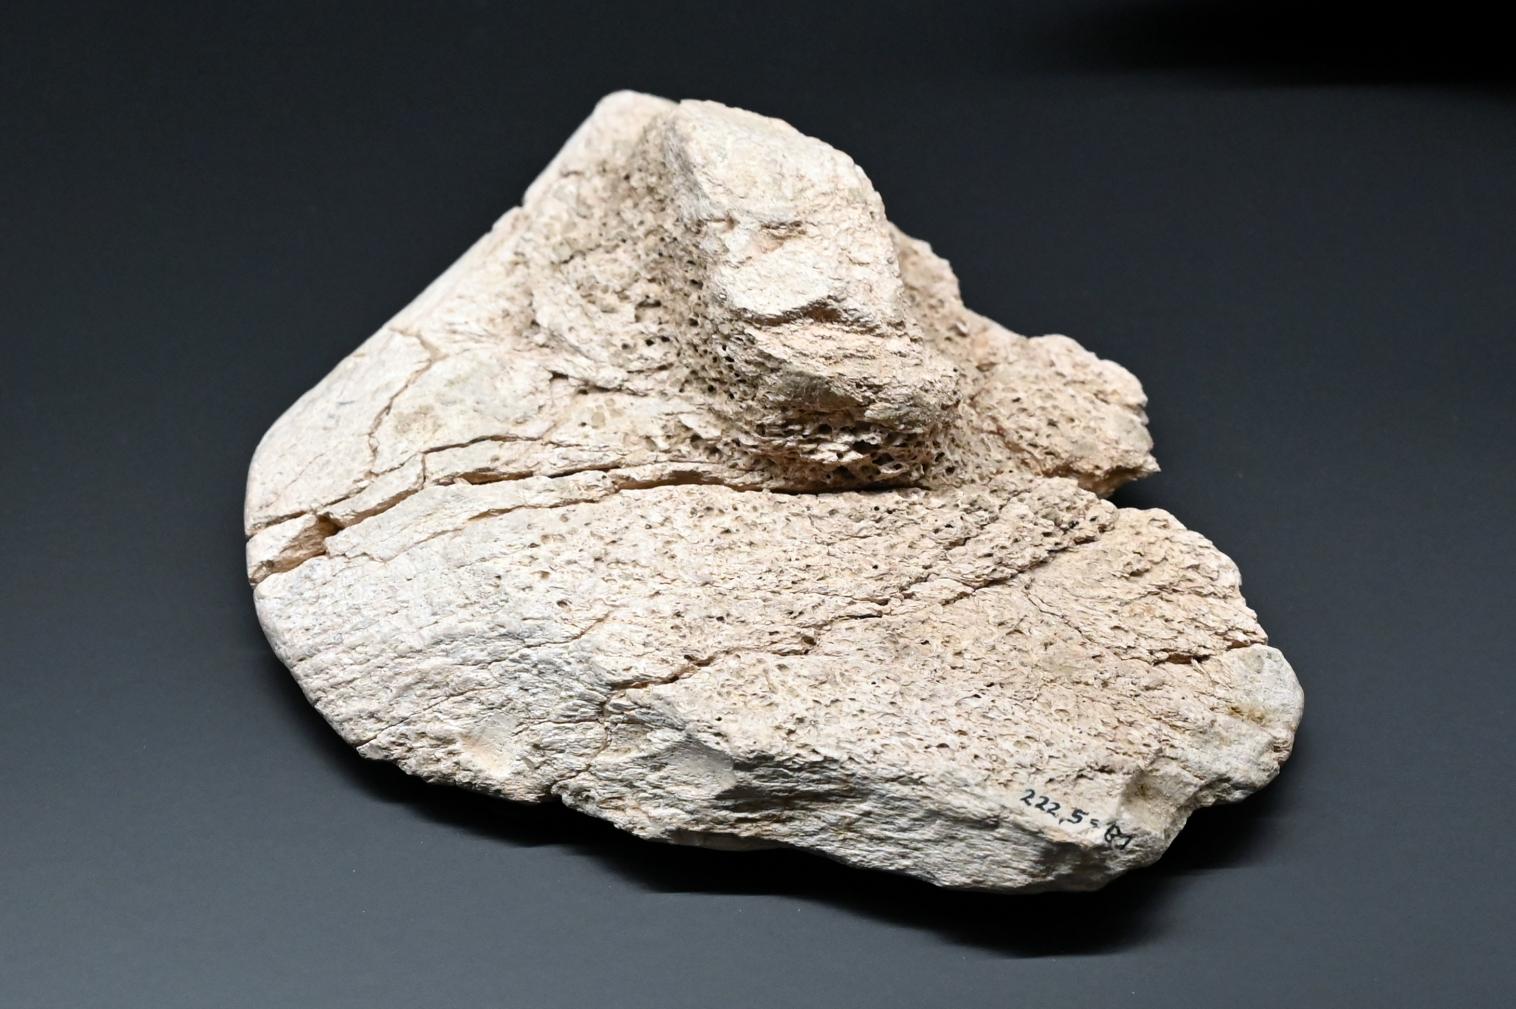 Schaberartiges Gerät, Reinsdorf-Warmzeit, 370000 v. Chr., 370000 v. Chr.